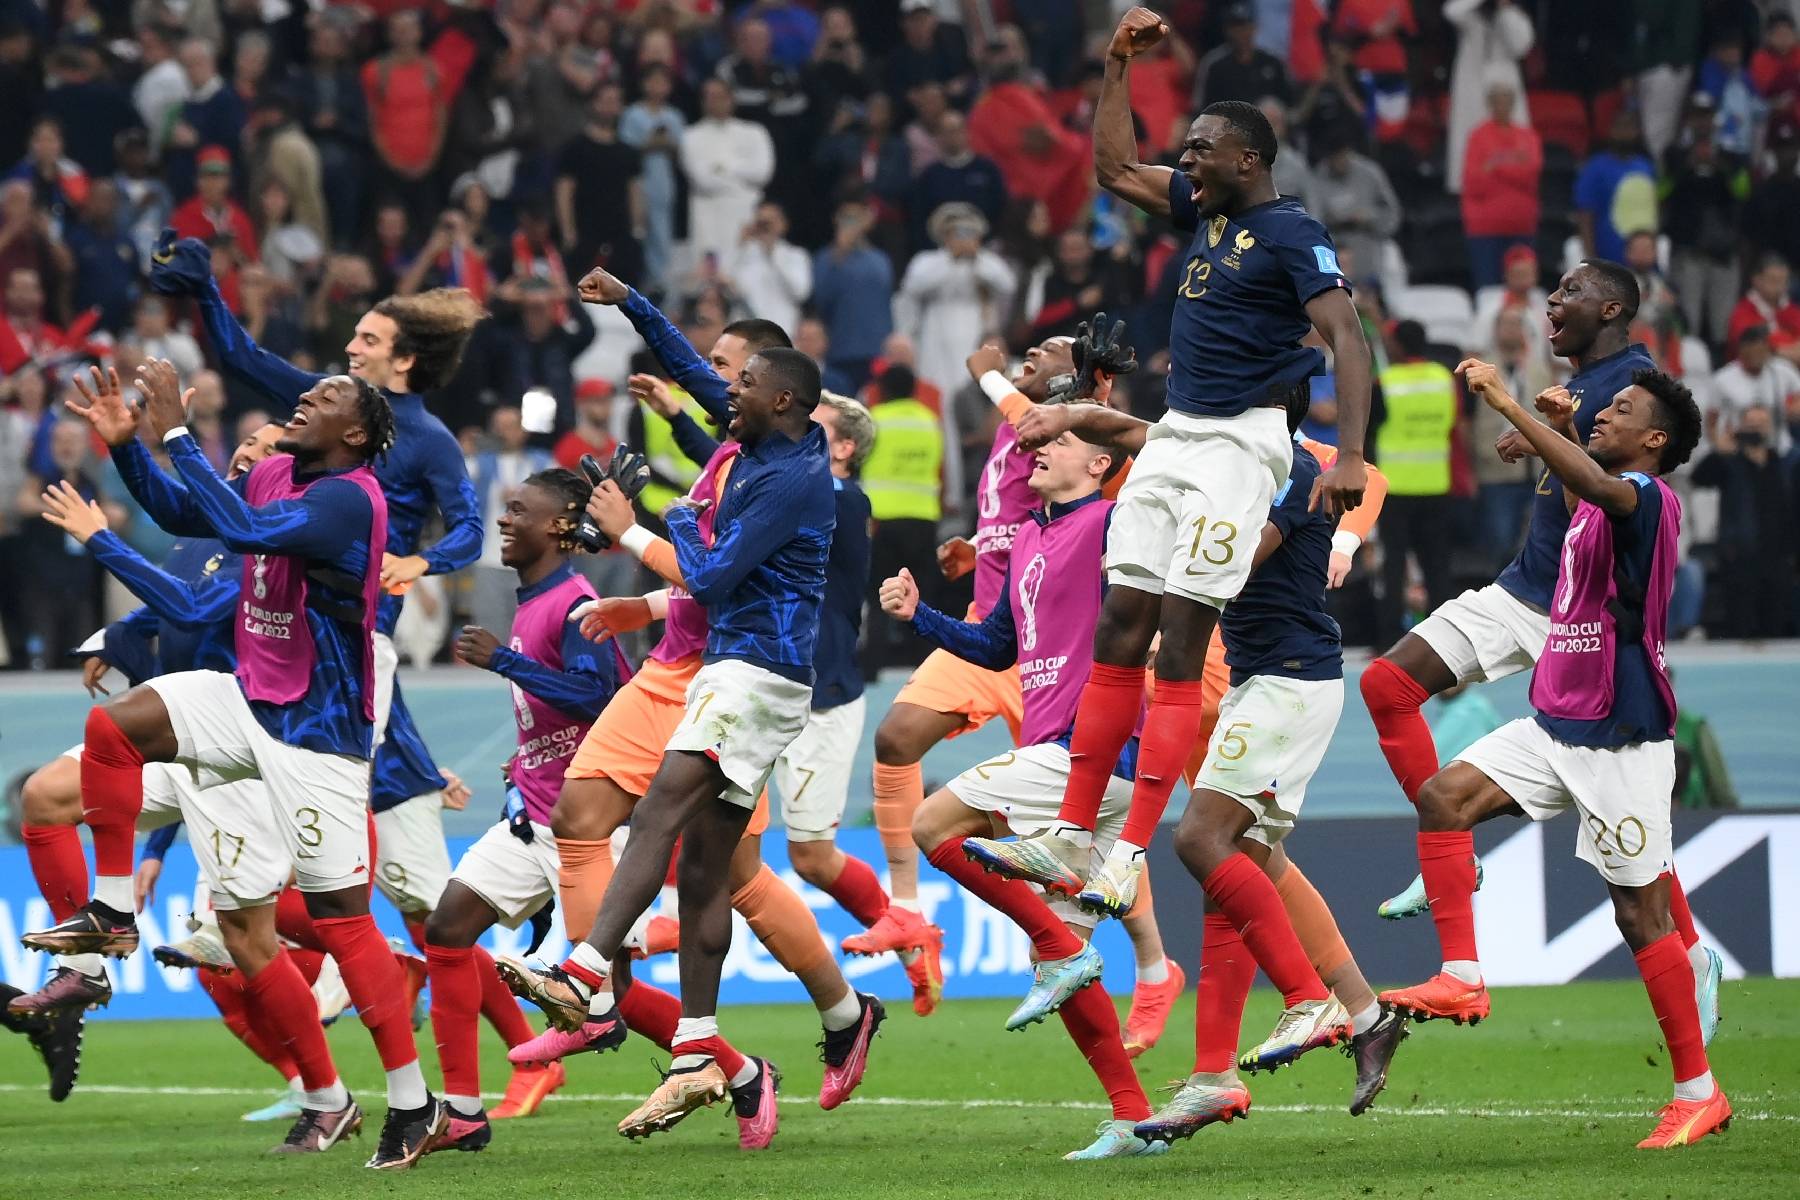 Mondial: La France et Mbappé retrouveront l'Argentine et Messi en finale